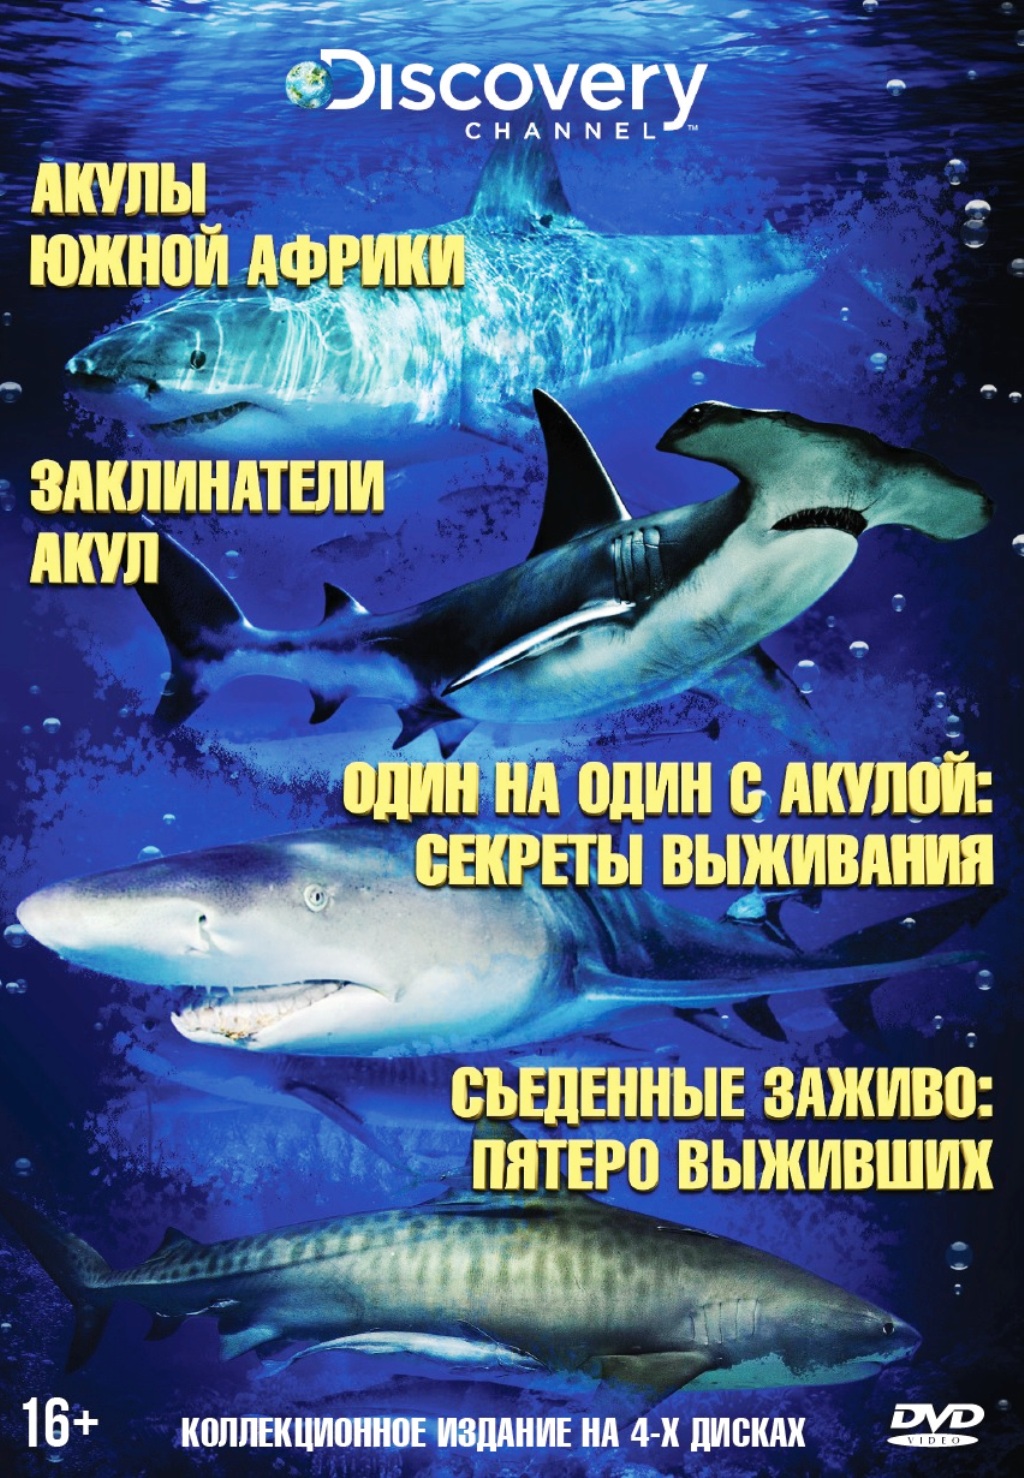 Акулы. Коллекция Discovery Channel (4 DVD) от 1С Интерес